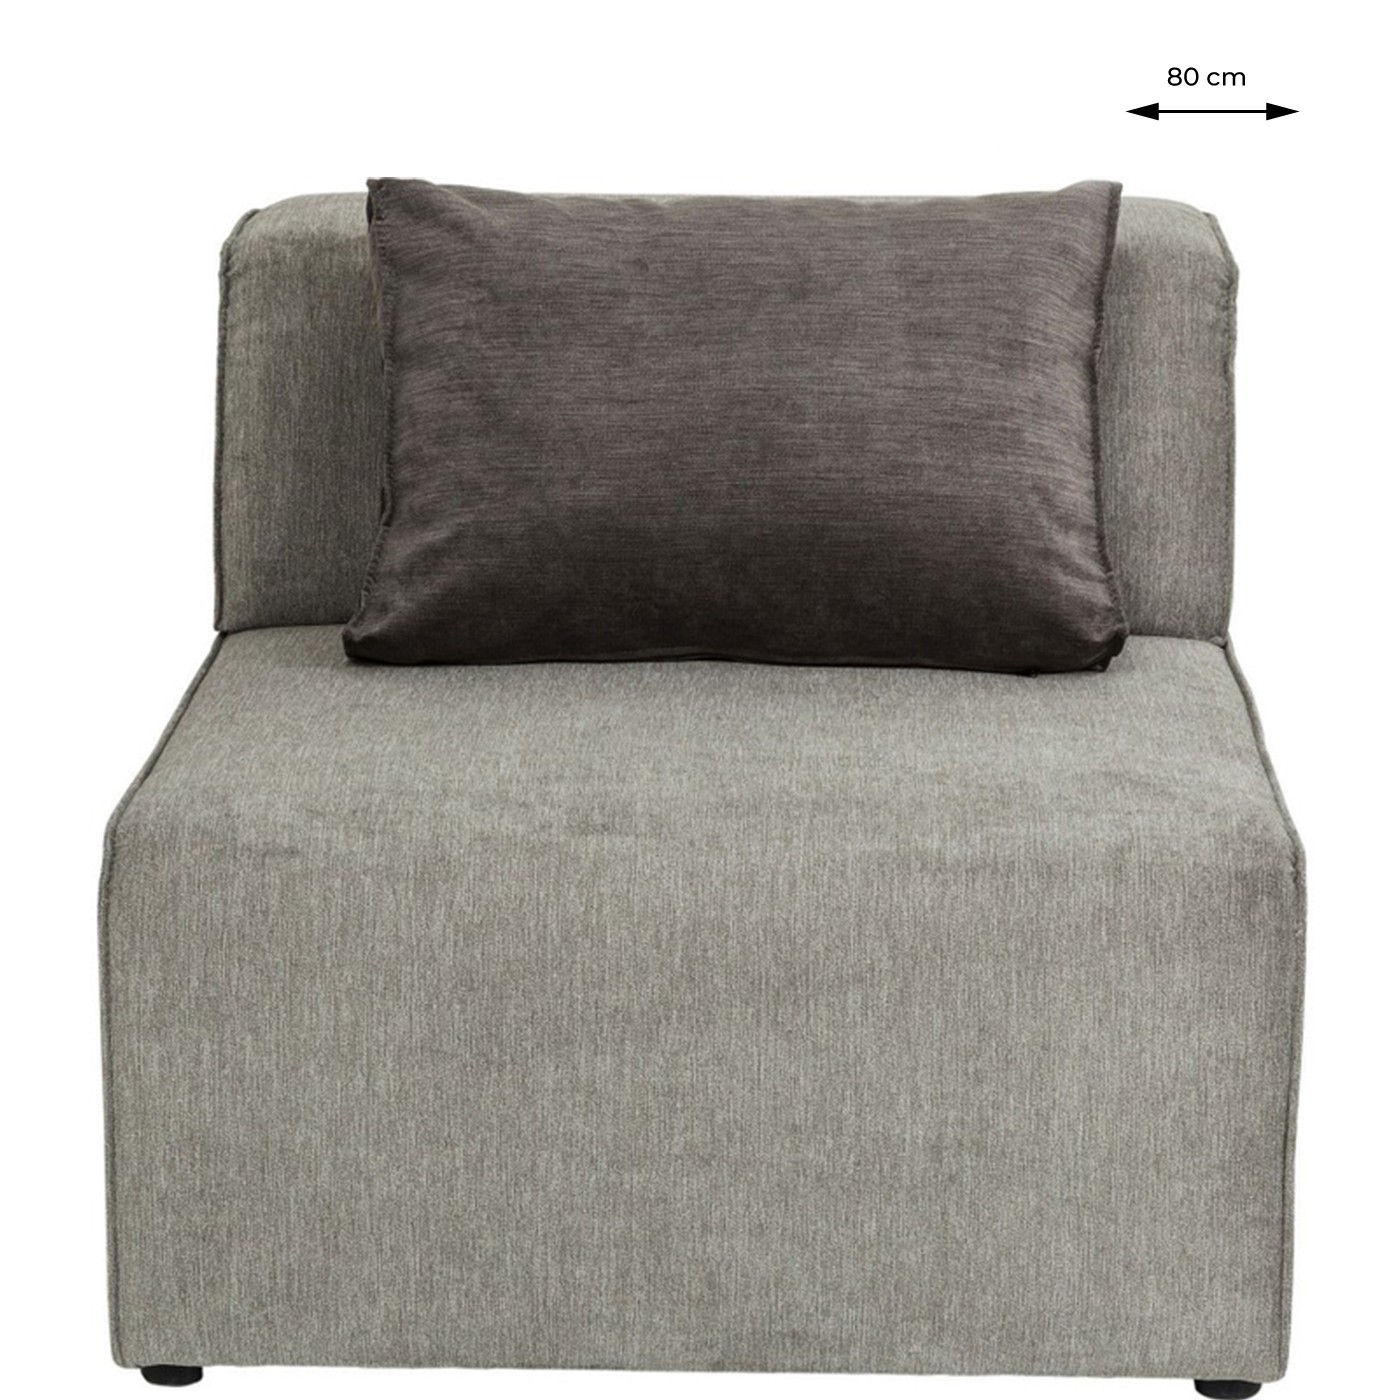 Assise centrale canapé Infinity gris Kare Design Longueur - 80cm